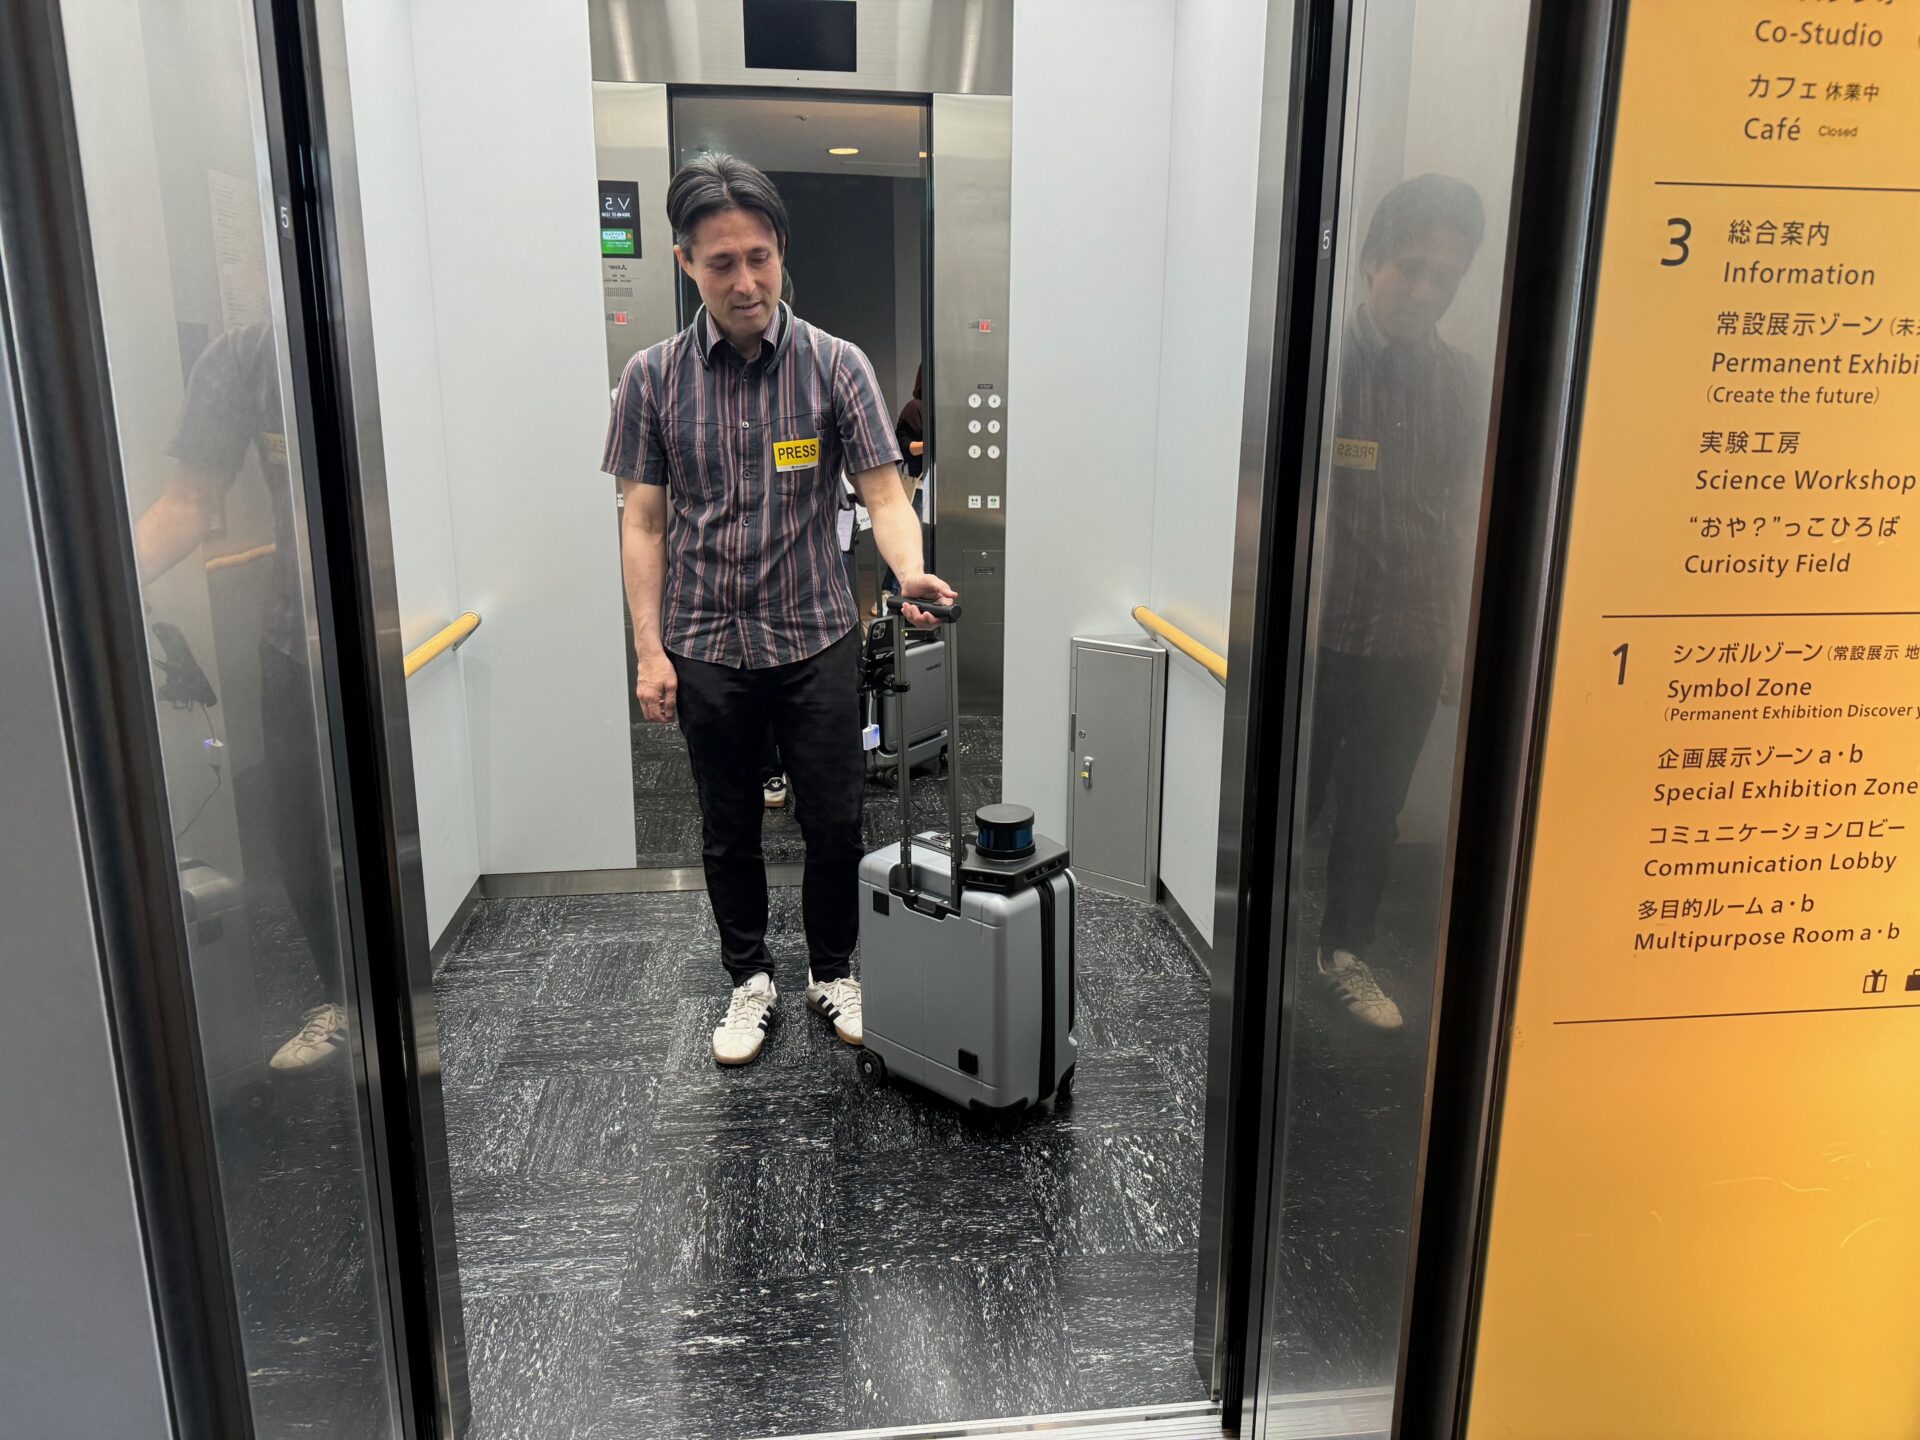 エレベーターの外から、エレベーターのなかにいるしらとりさんを写した写真。エーアイスーツケースとともにエレベーターの中央あたりにしらとりさんがいます